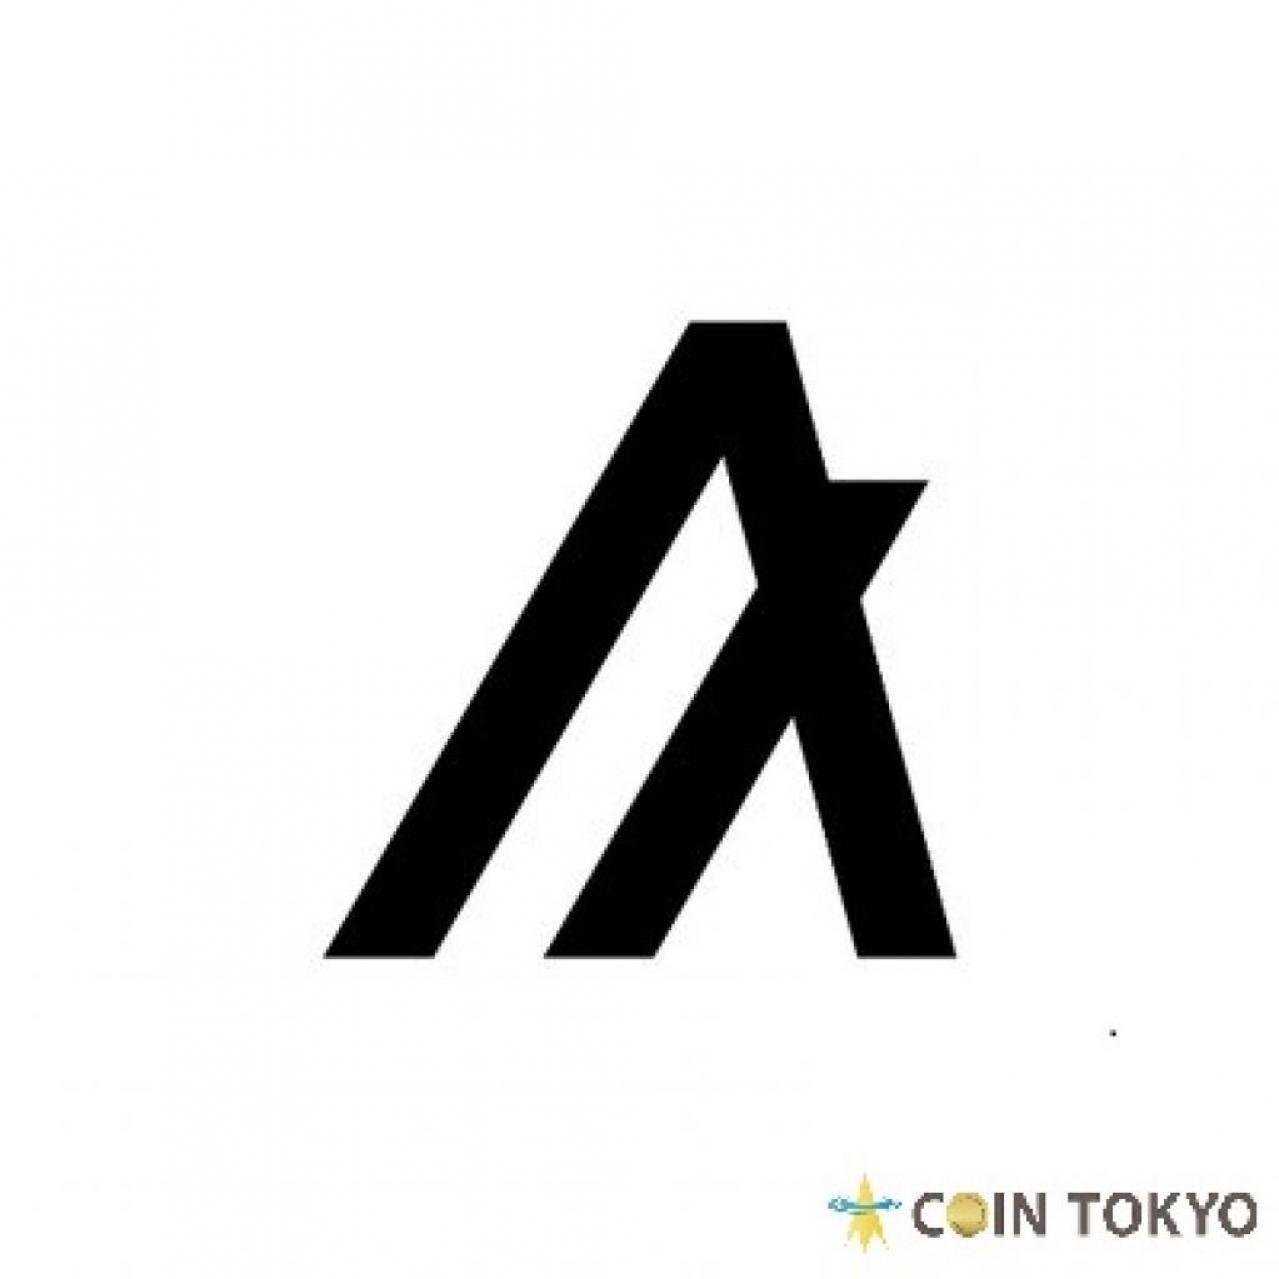 意大利版权管理组织SIAE与Algorand（ALGO）区块链+虚拟货币新闻网站Coin Tokyo合作开发